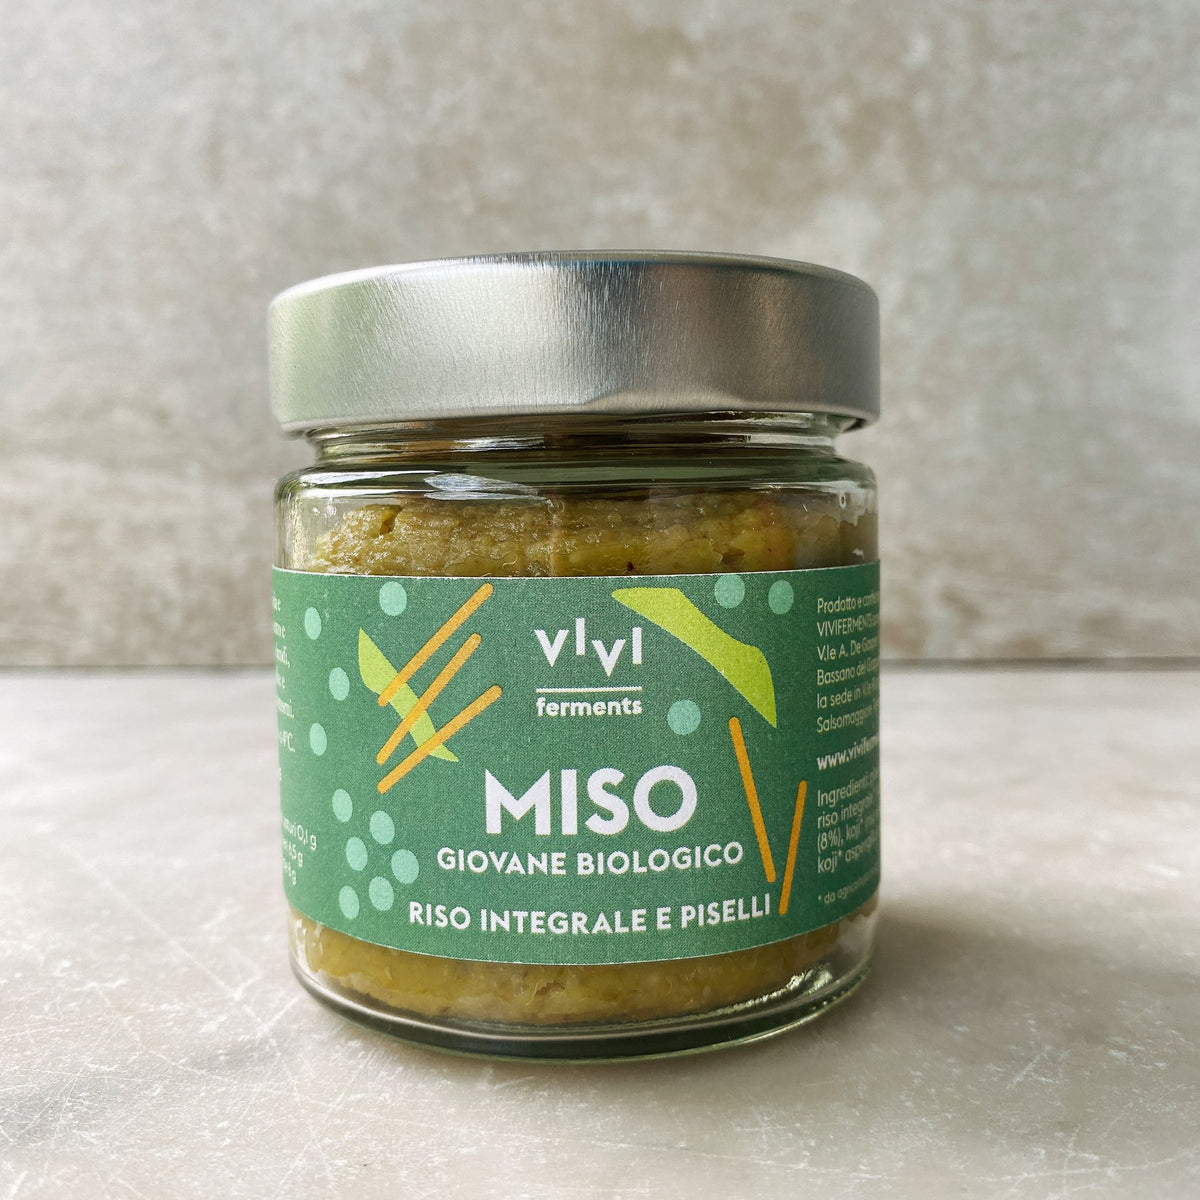 MISO GIOVANE BIOLOGICO. RISO INTEGRALE E PISELLI – VIVI ferments